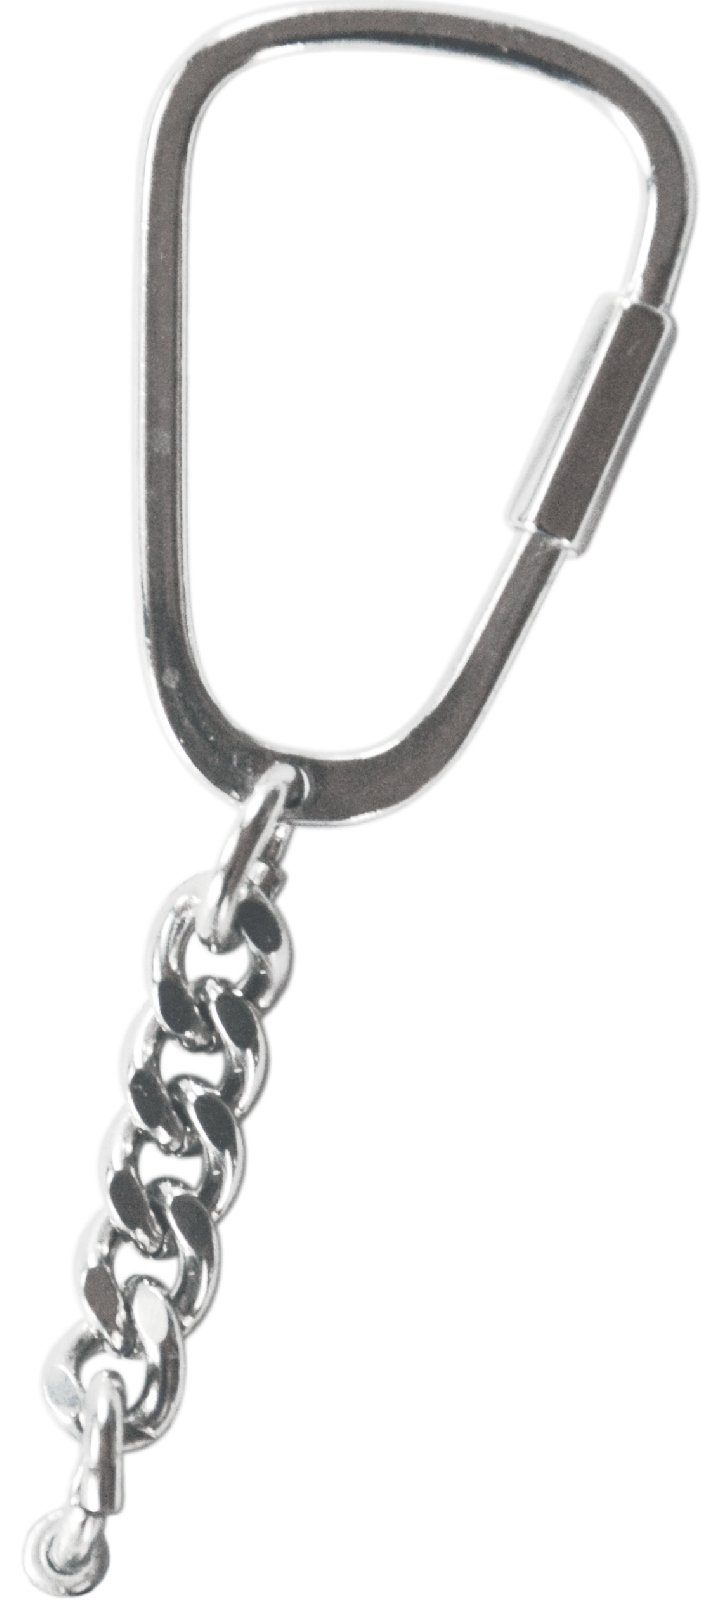 Emblem mit Autocomfort PLAYBOY HR Hase Relief Gravur Silberfarbener Schlüsselanhänger Schlüsselanhänger BUNNY Metall